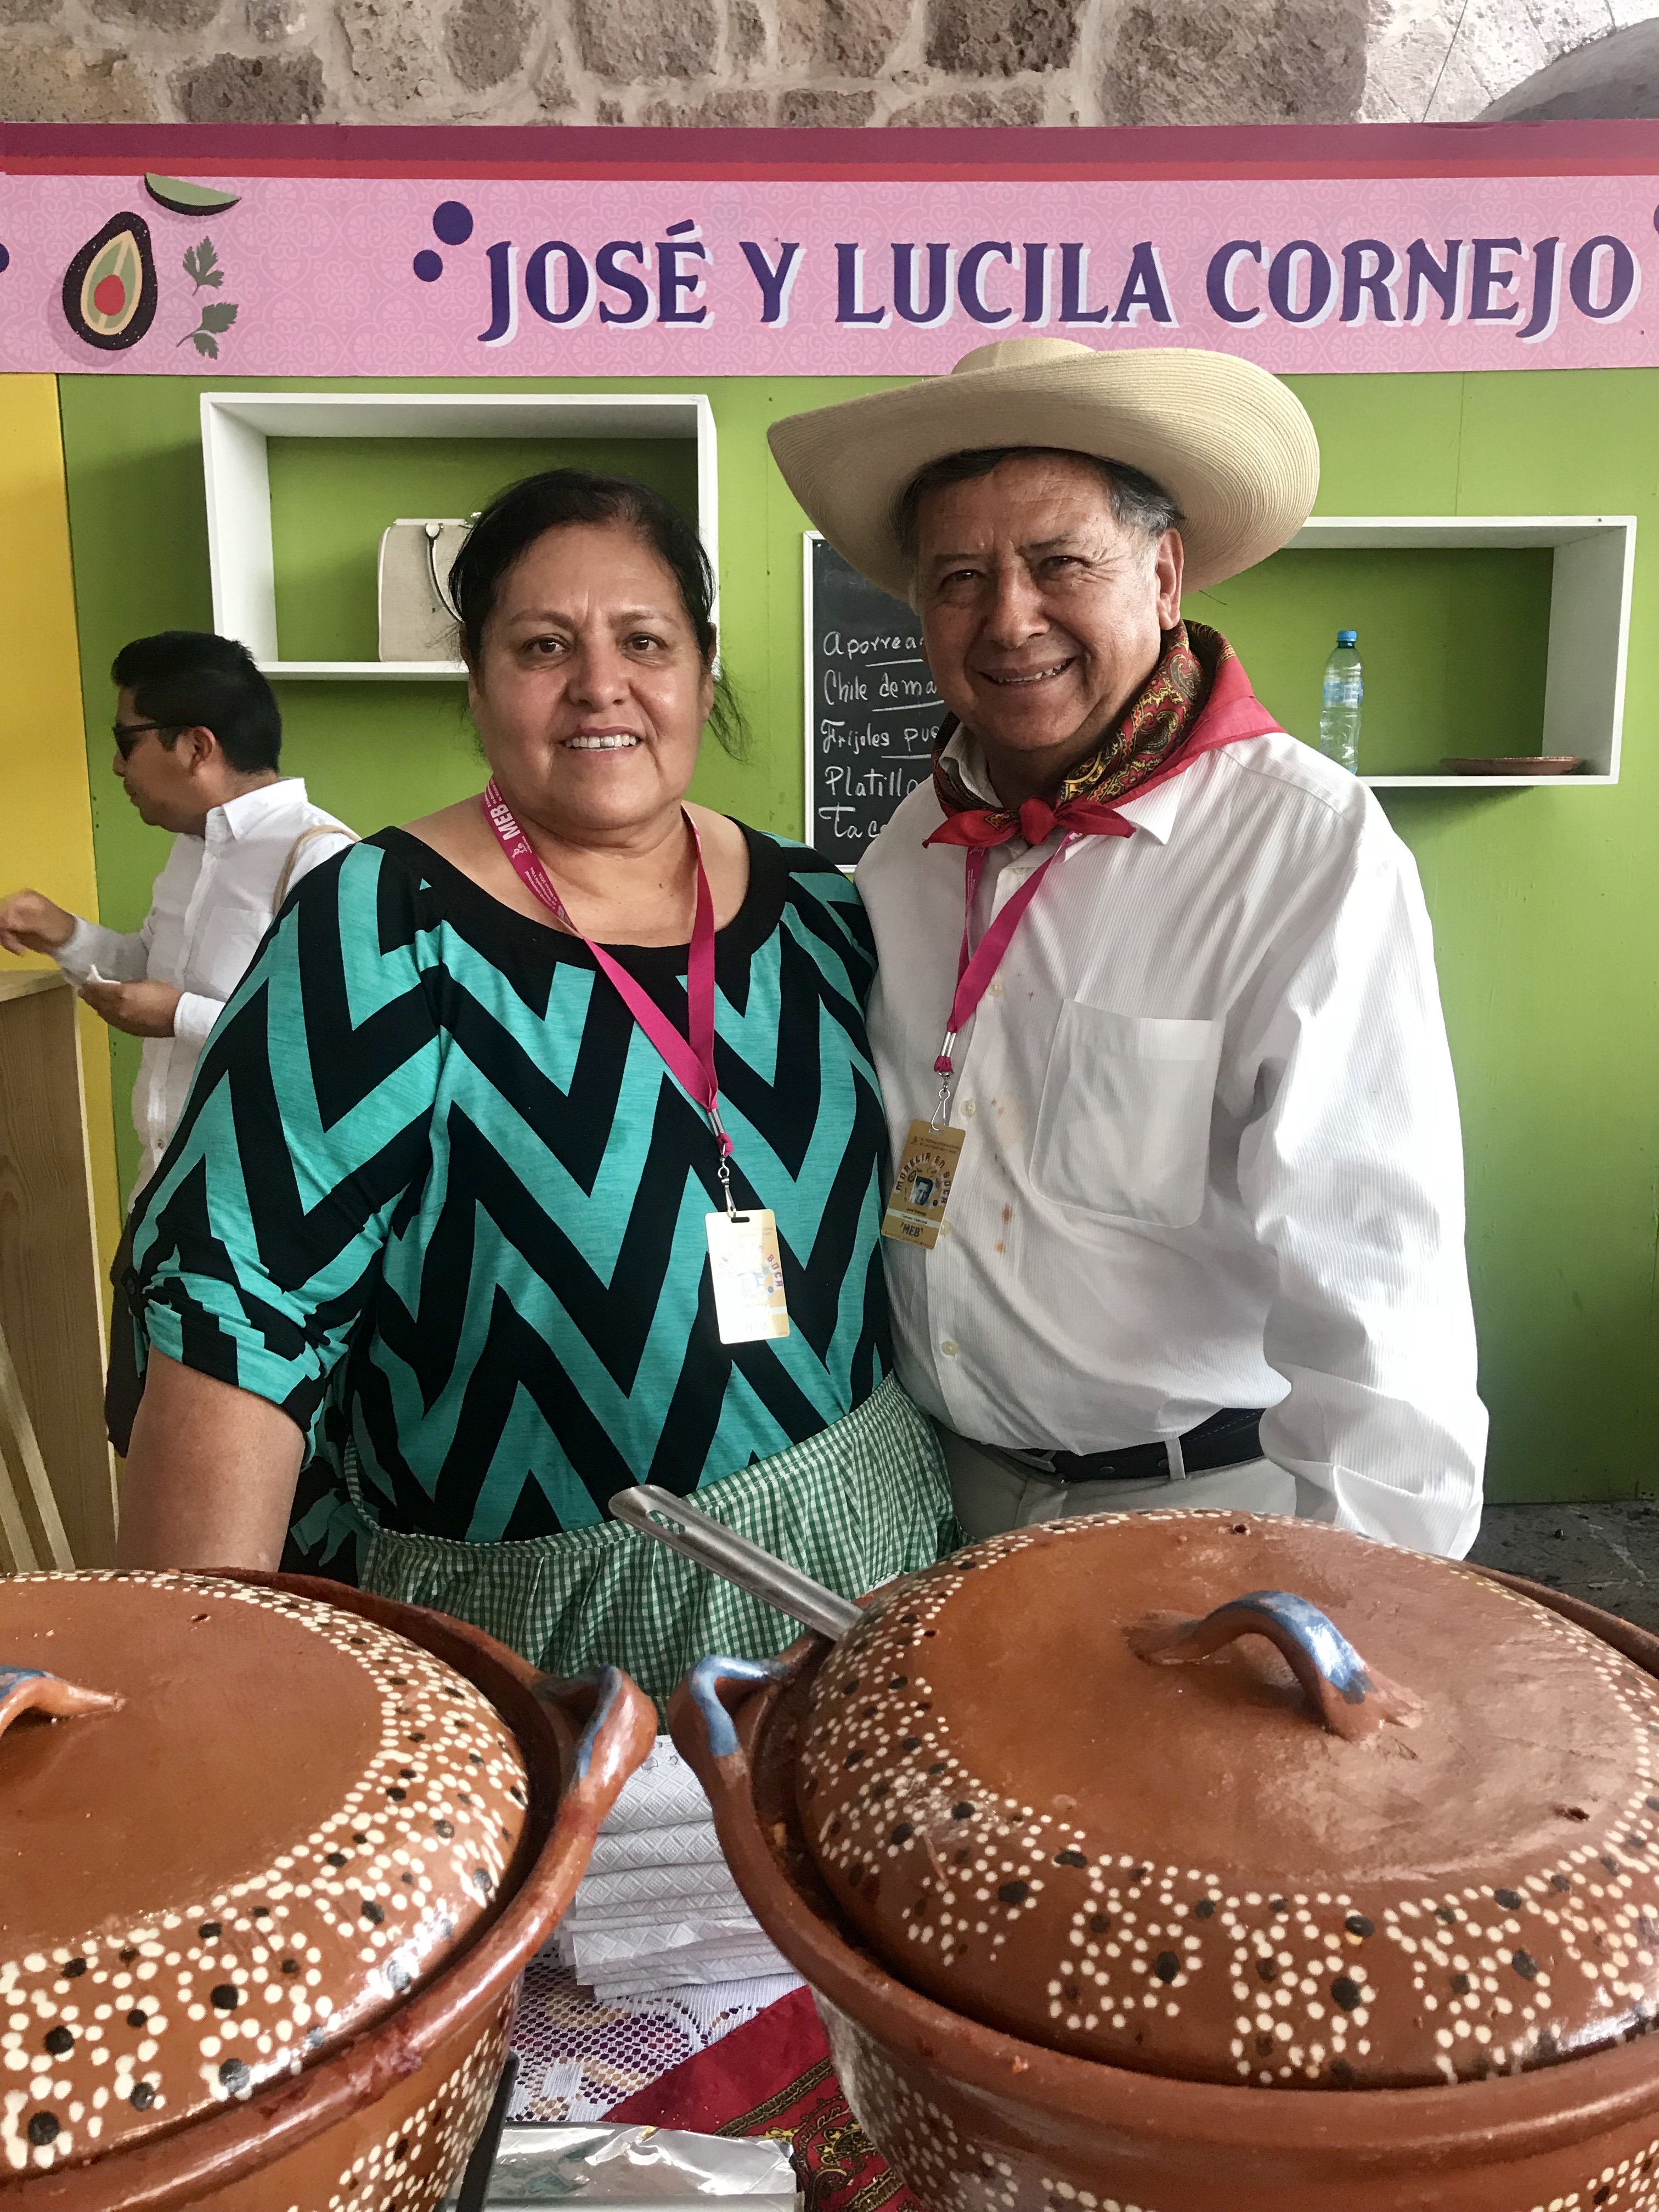 José y Lucila Cornejo, cocineros tradicionales. Gastronomía mexicana y cocina michoacana.